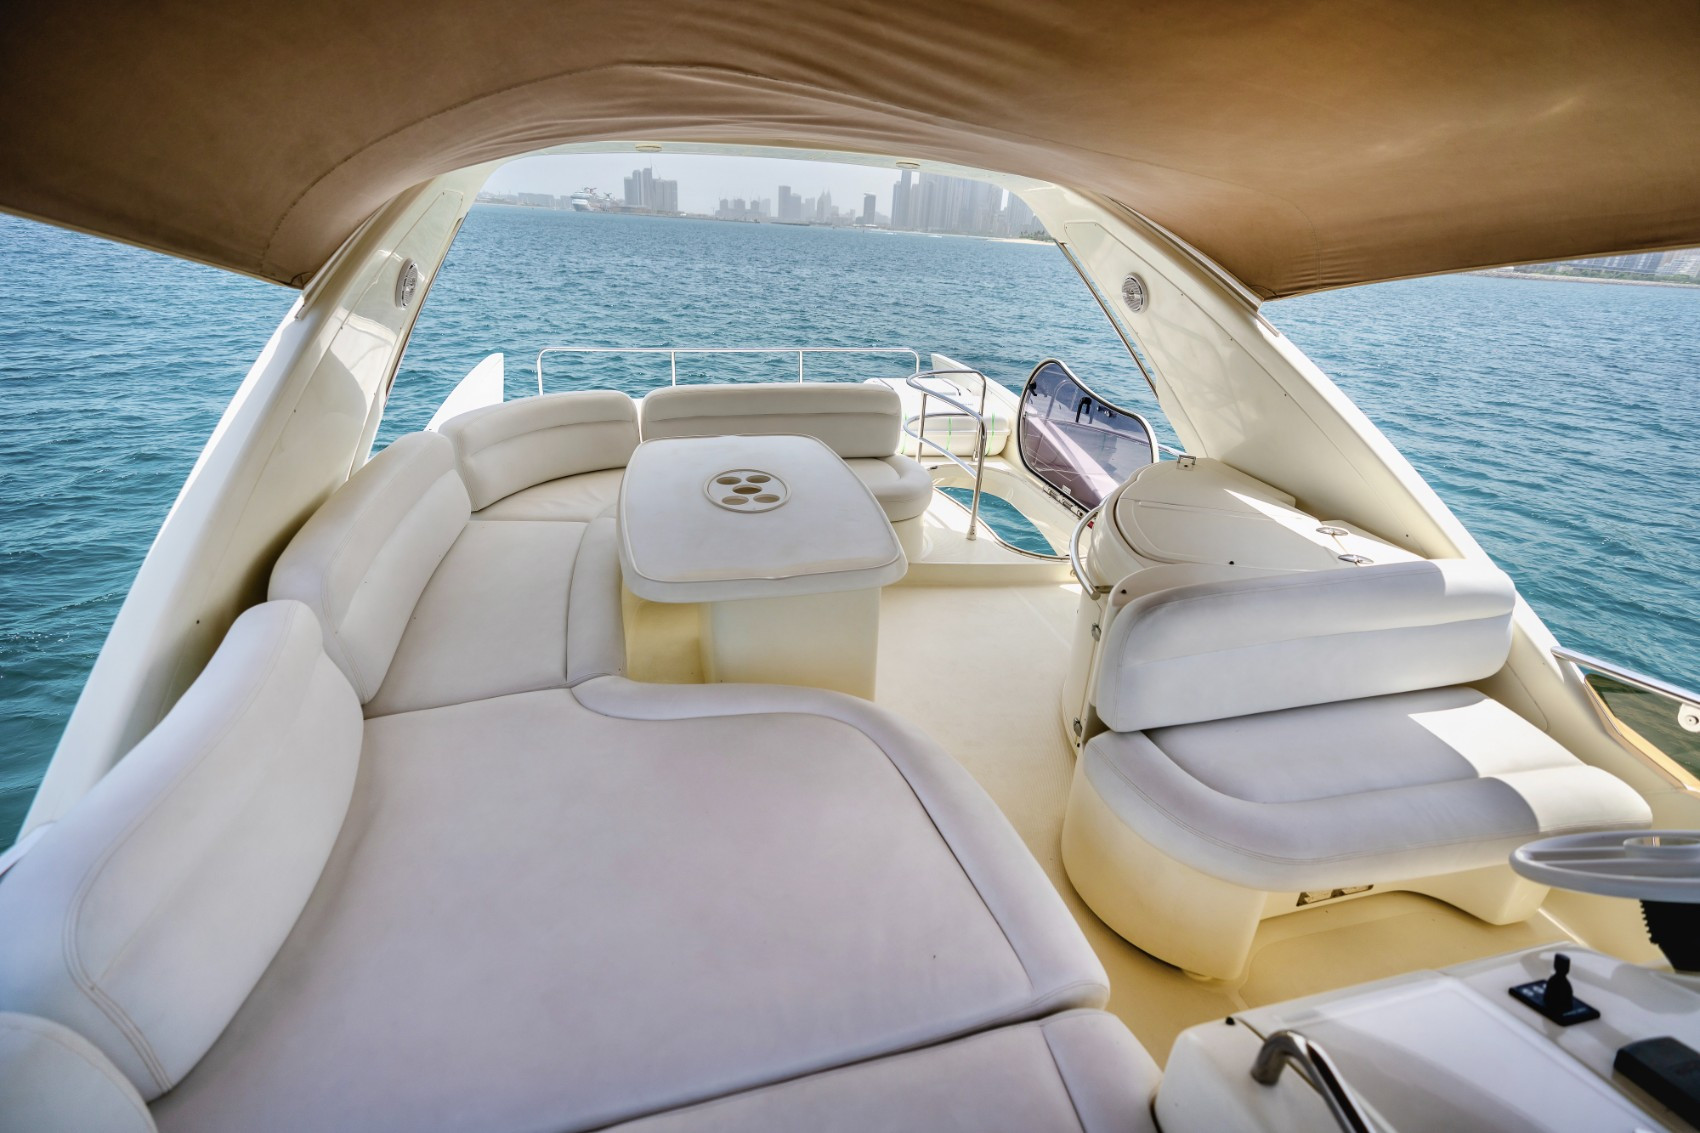 Lucky Star 62 ft in Dubai Harbour for rent in Dubai 3